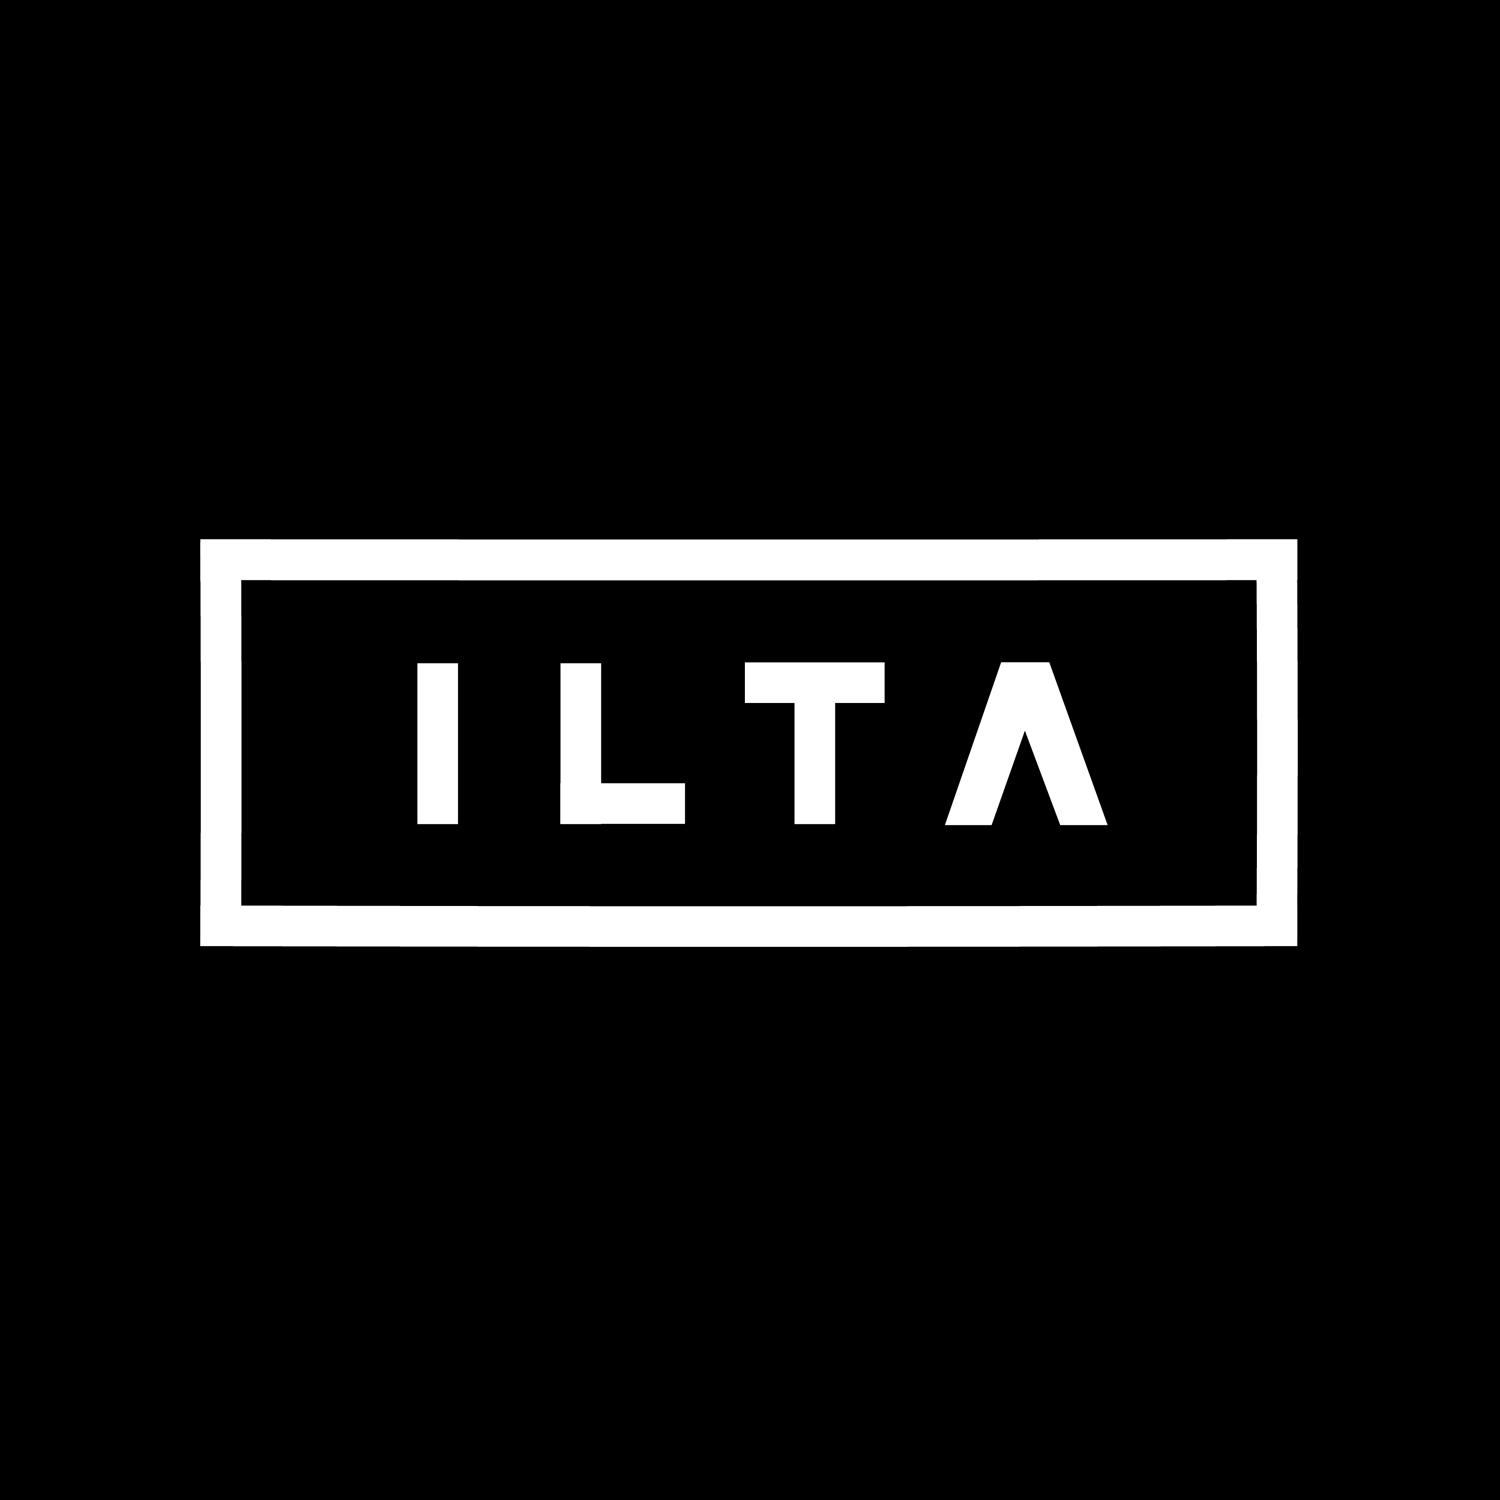  ILTA Podcast // Puhe 30 // Markus Särkkä